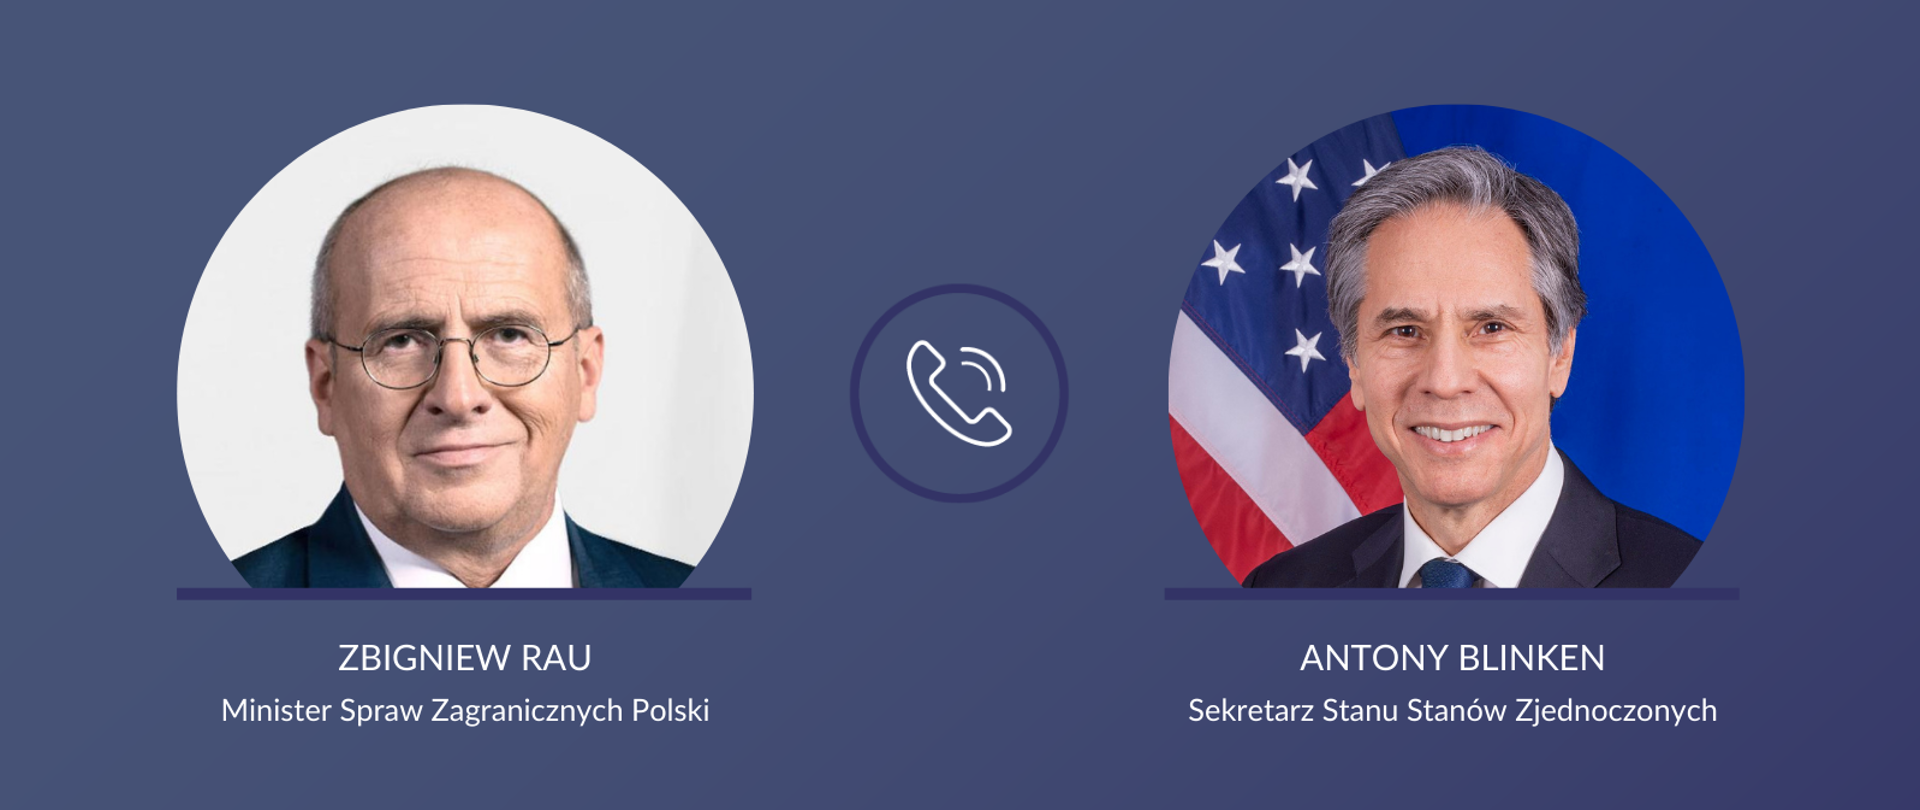 Minister Spraw Zagranicznych Polski Zbigniew Rau i Sekretarz Stanu Stanów Zjednoczonych Antony Blinken 